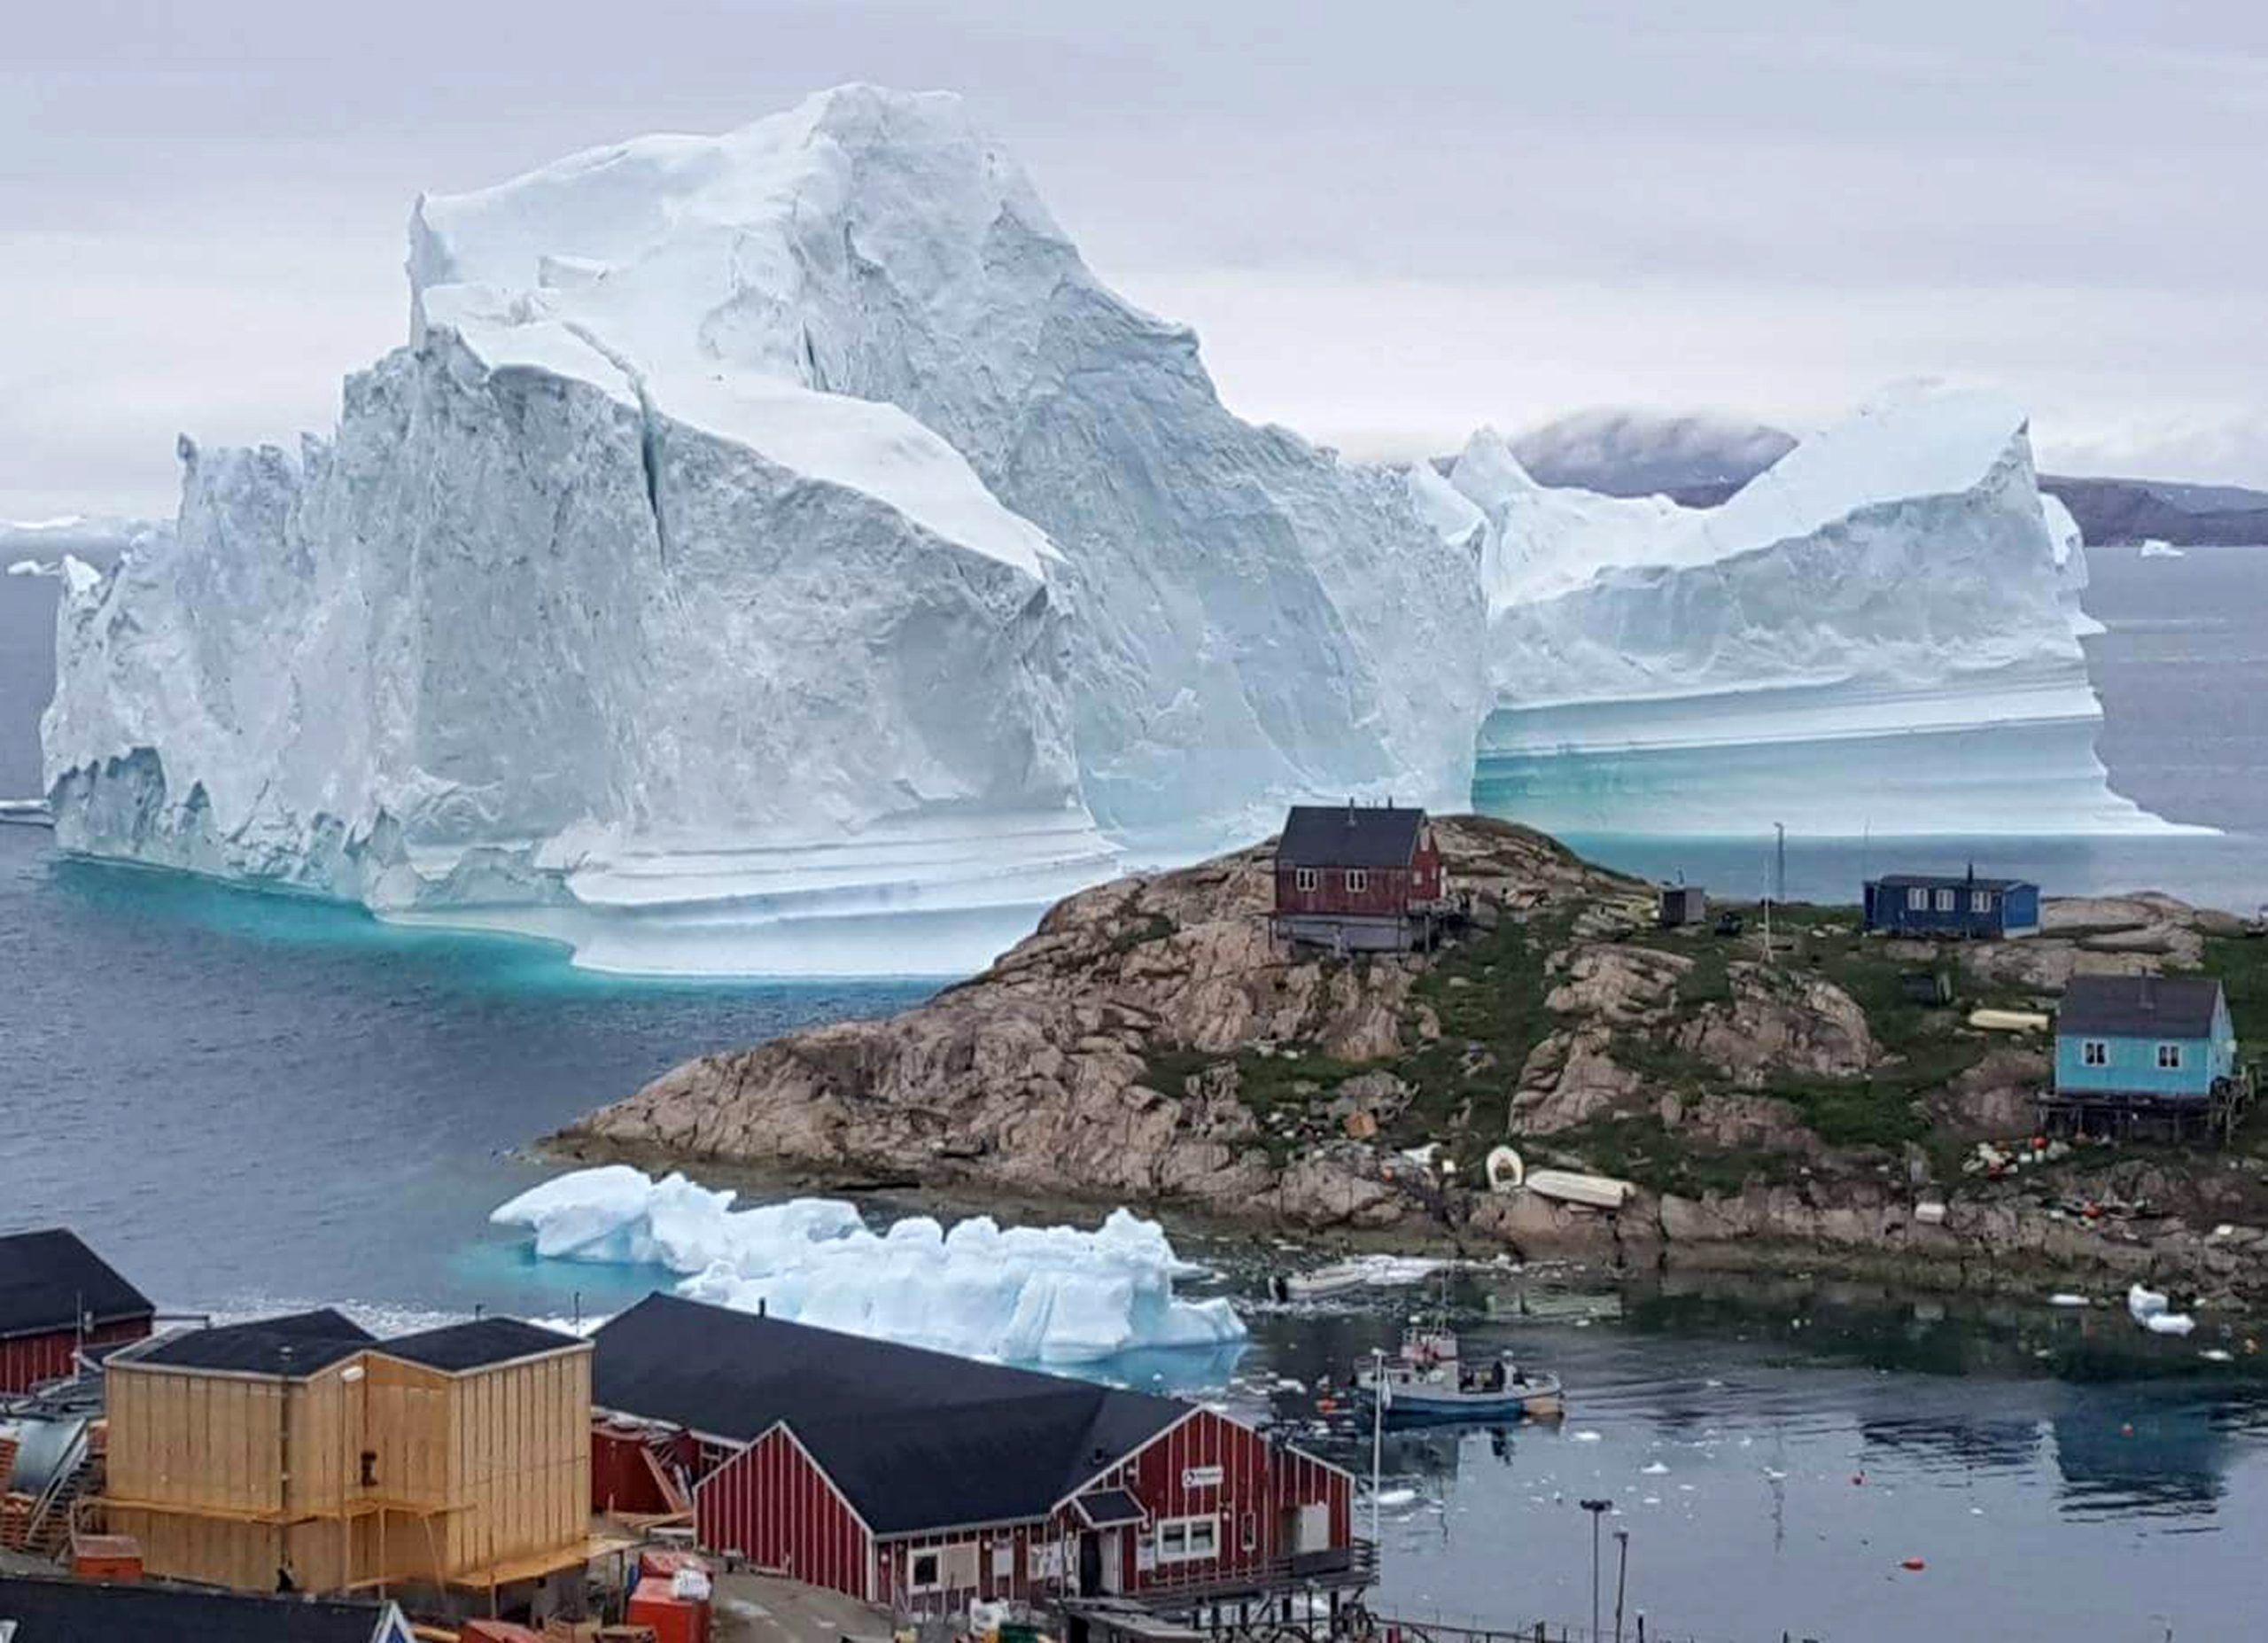 Ν.Τραμπ για Γροιλανδία: «Εχει τεράστια αξία – Μας ενδιαφέρει & την θέλουμε» – Ιδού γιατί (βίντεο)